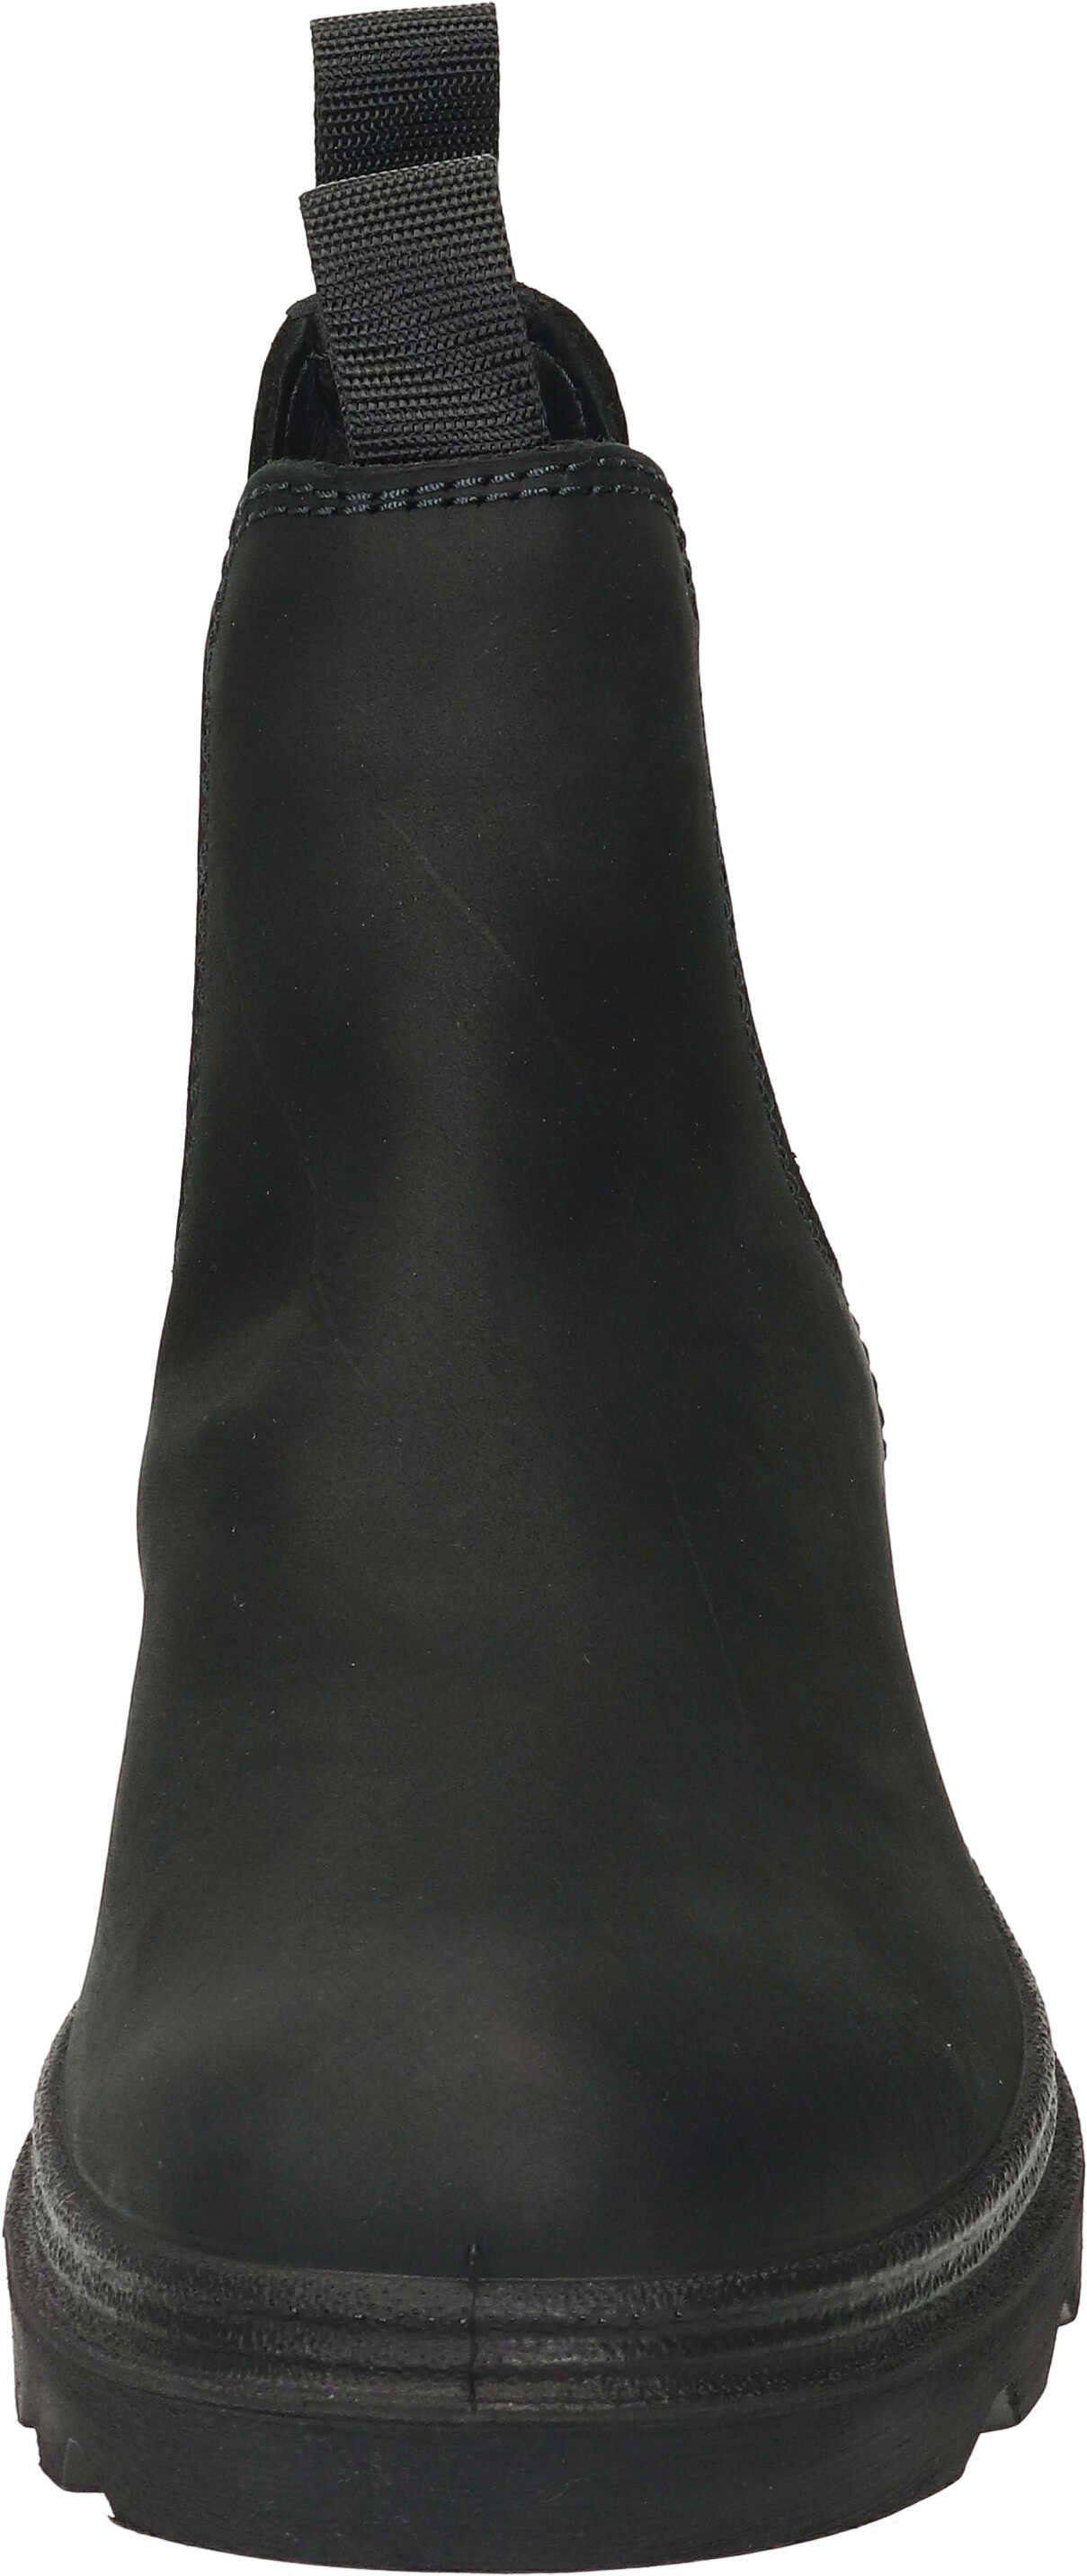 Stiefeletten echtem Stiefelette aus Fettleder schwarz Ecco